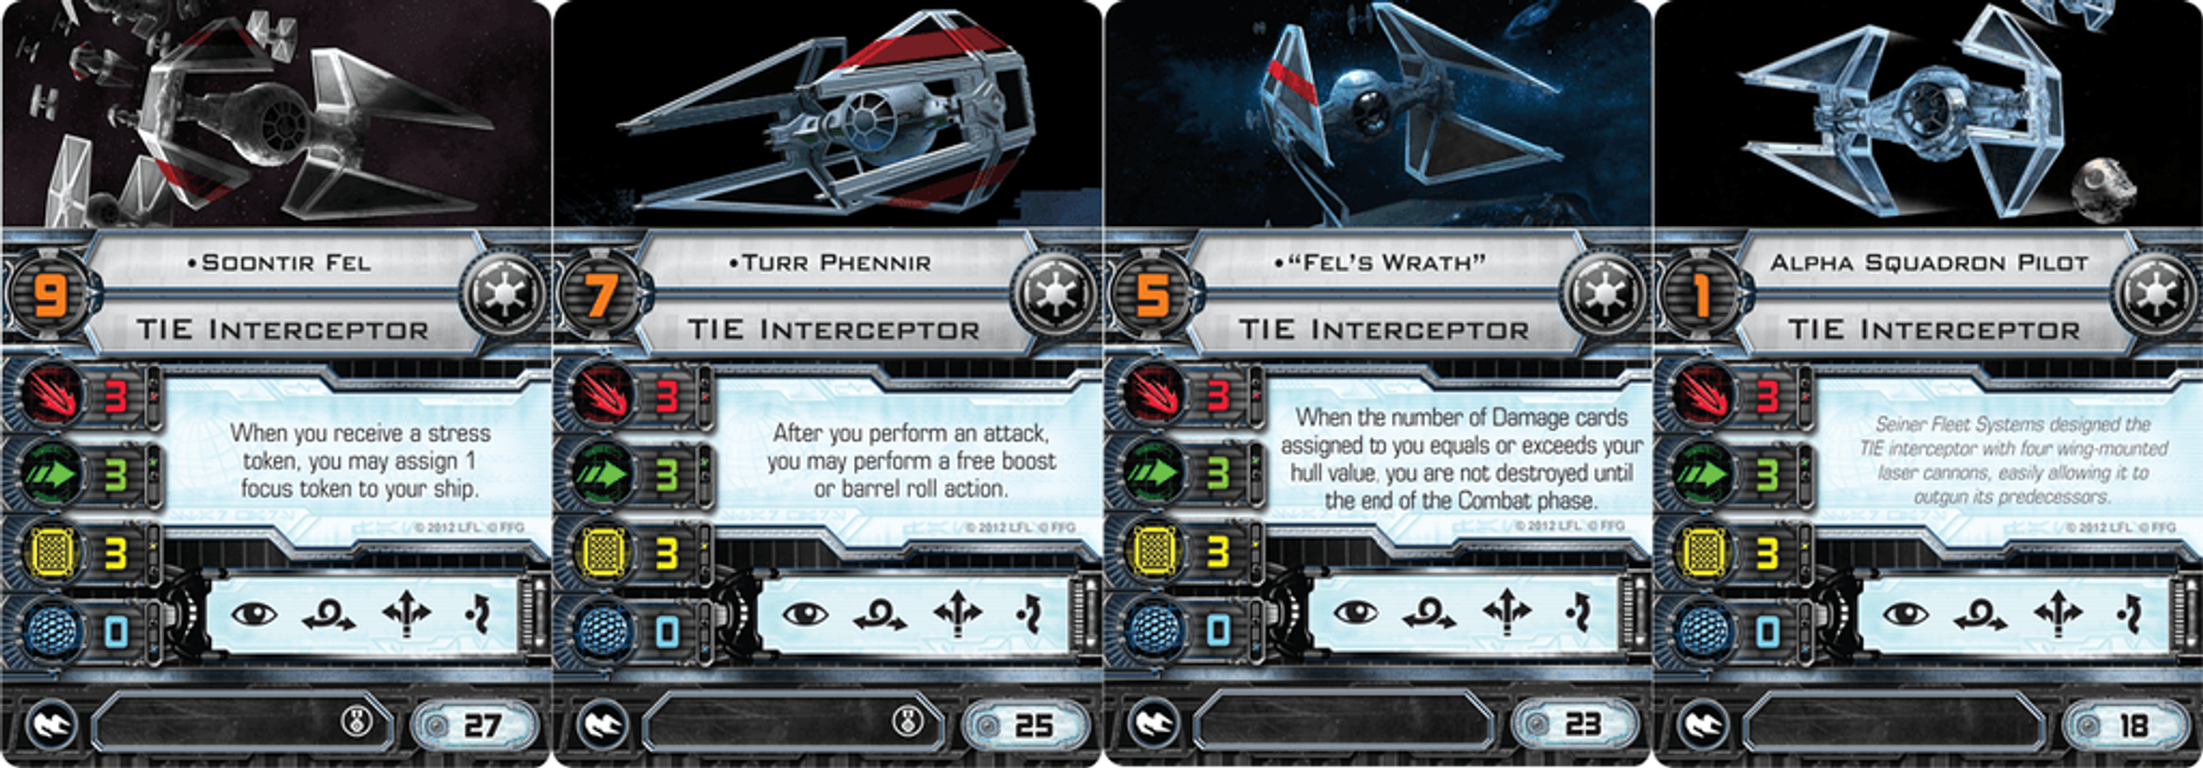 Star Wars: X-Wing Gioco di Miniature - Intercettore TIE Pack di Espansione carte